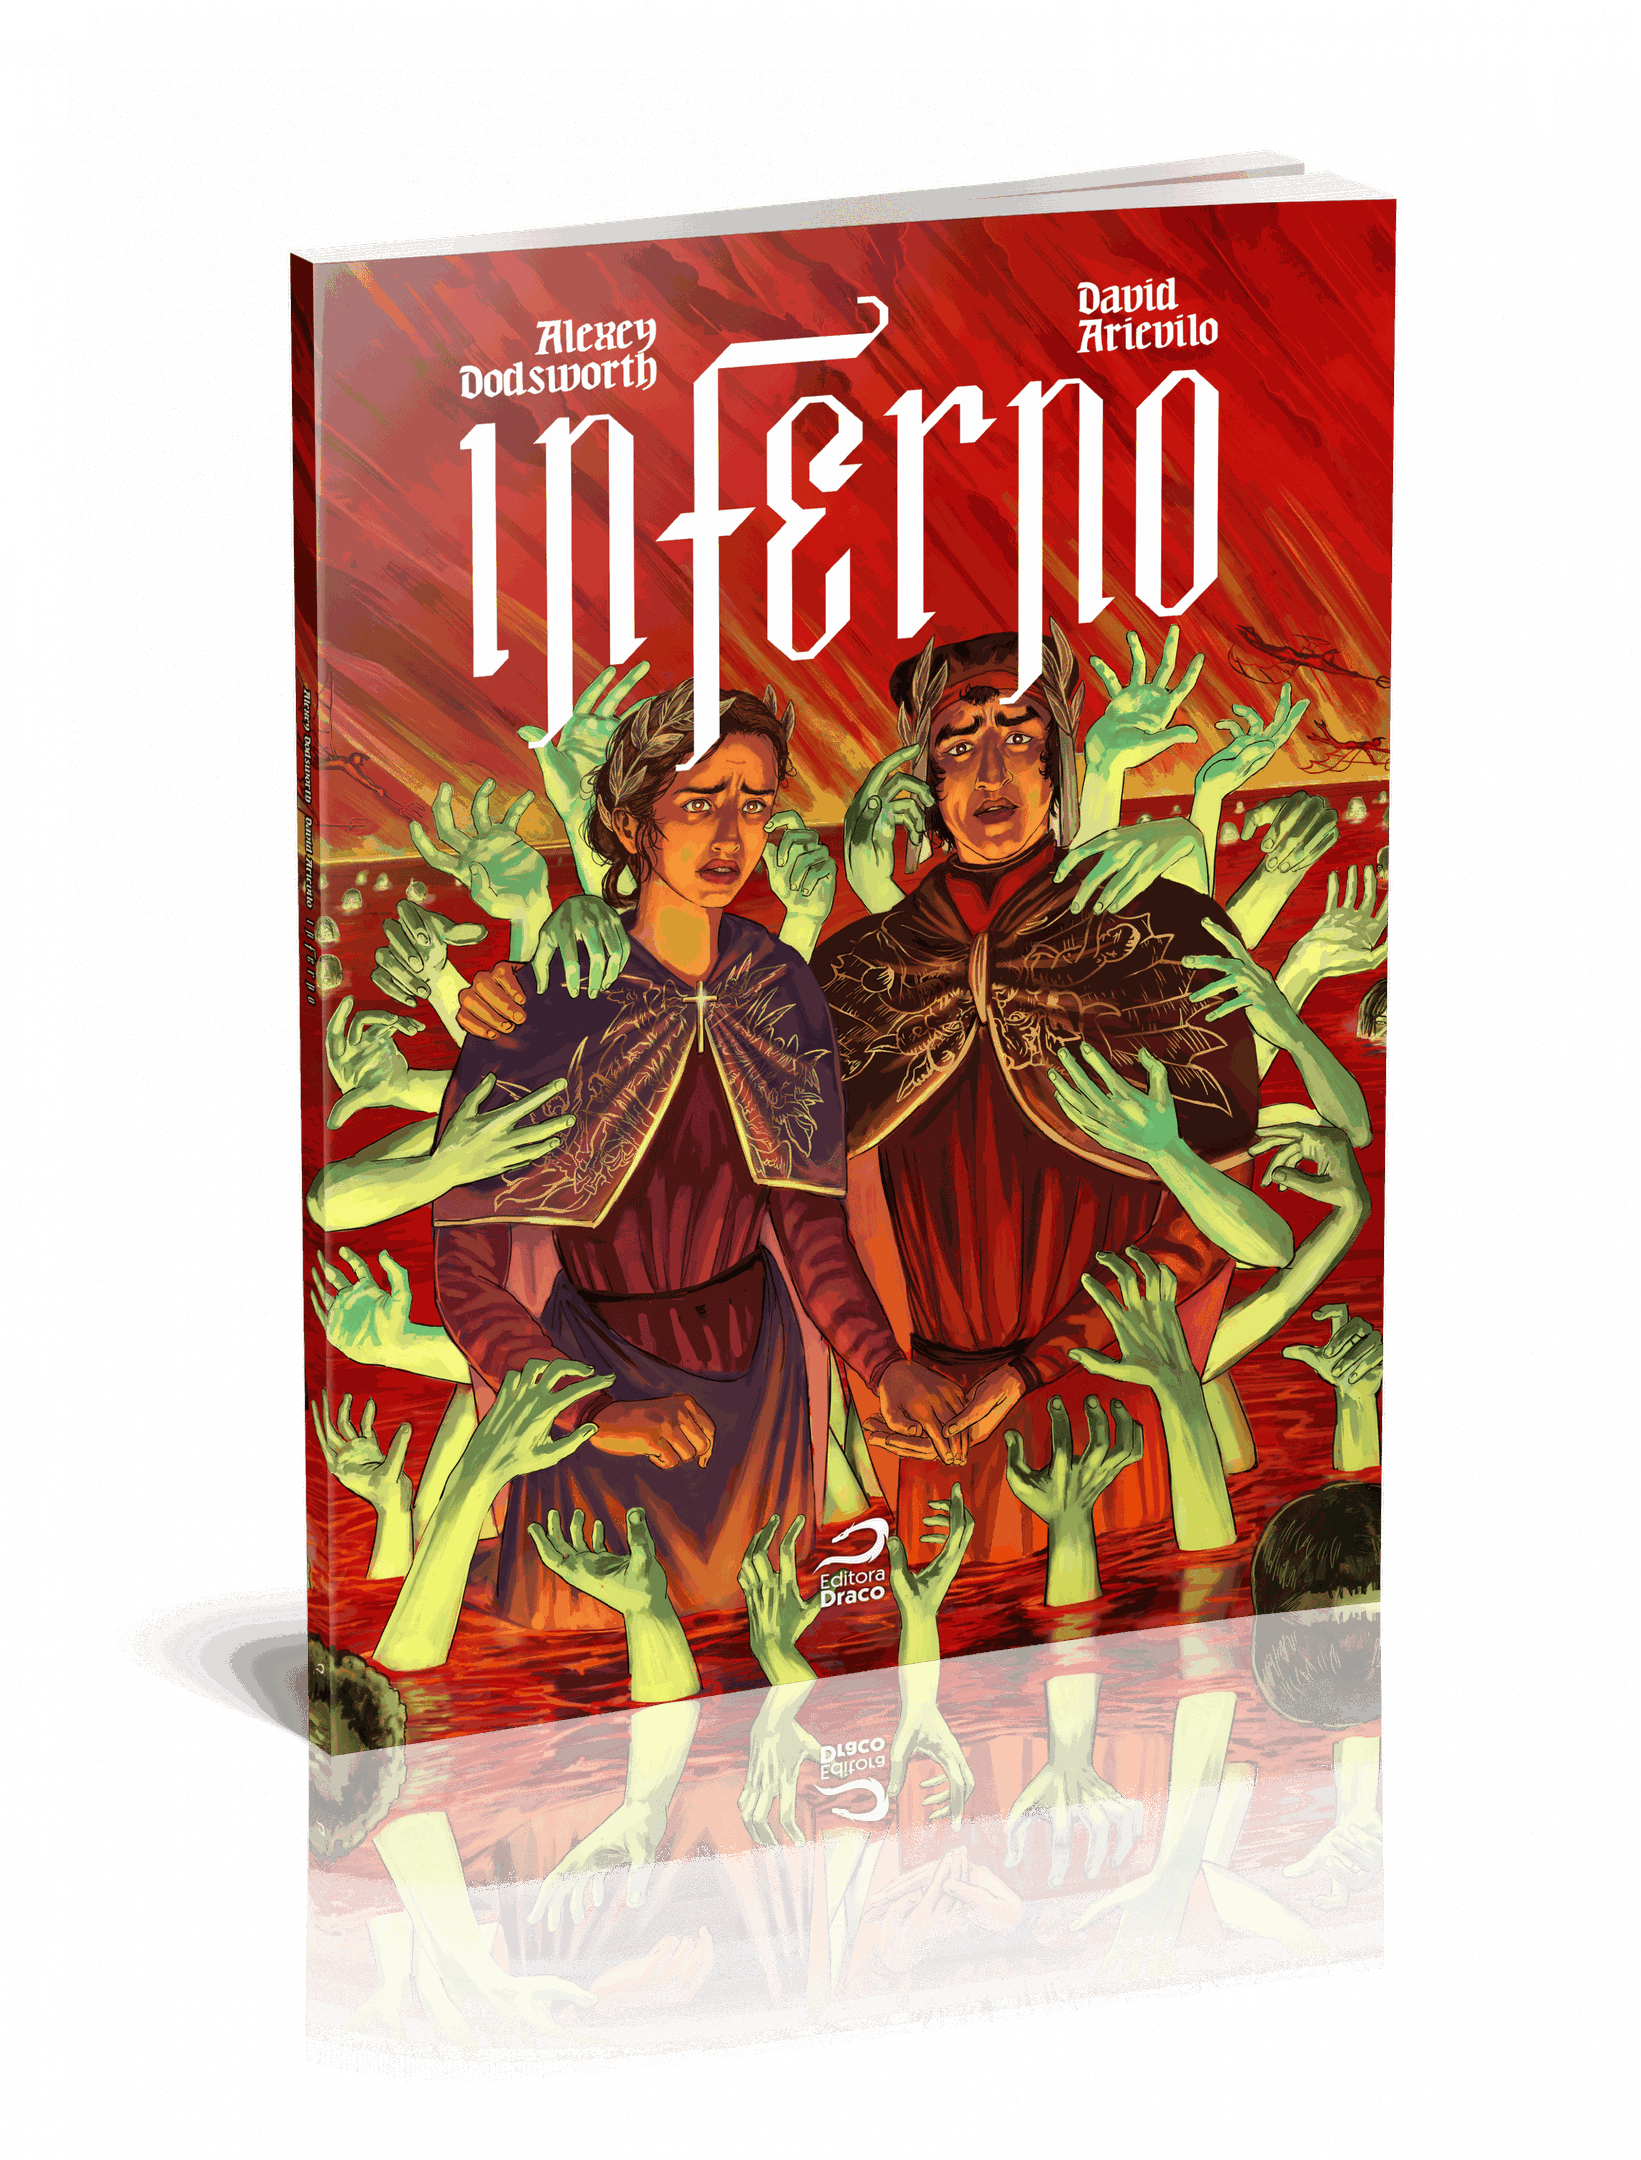 Resenha: Inferno de Dante, O :: DVDMagazine: 20 ANOS ON-LINE